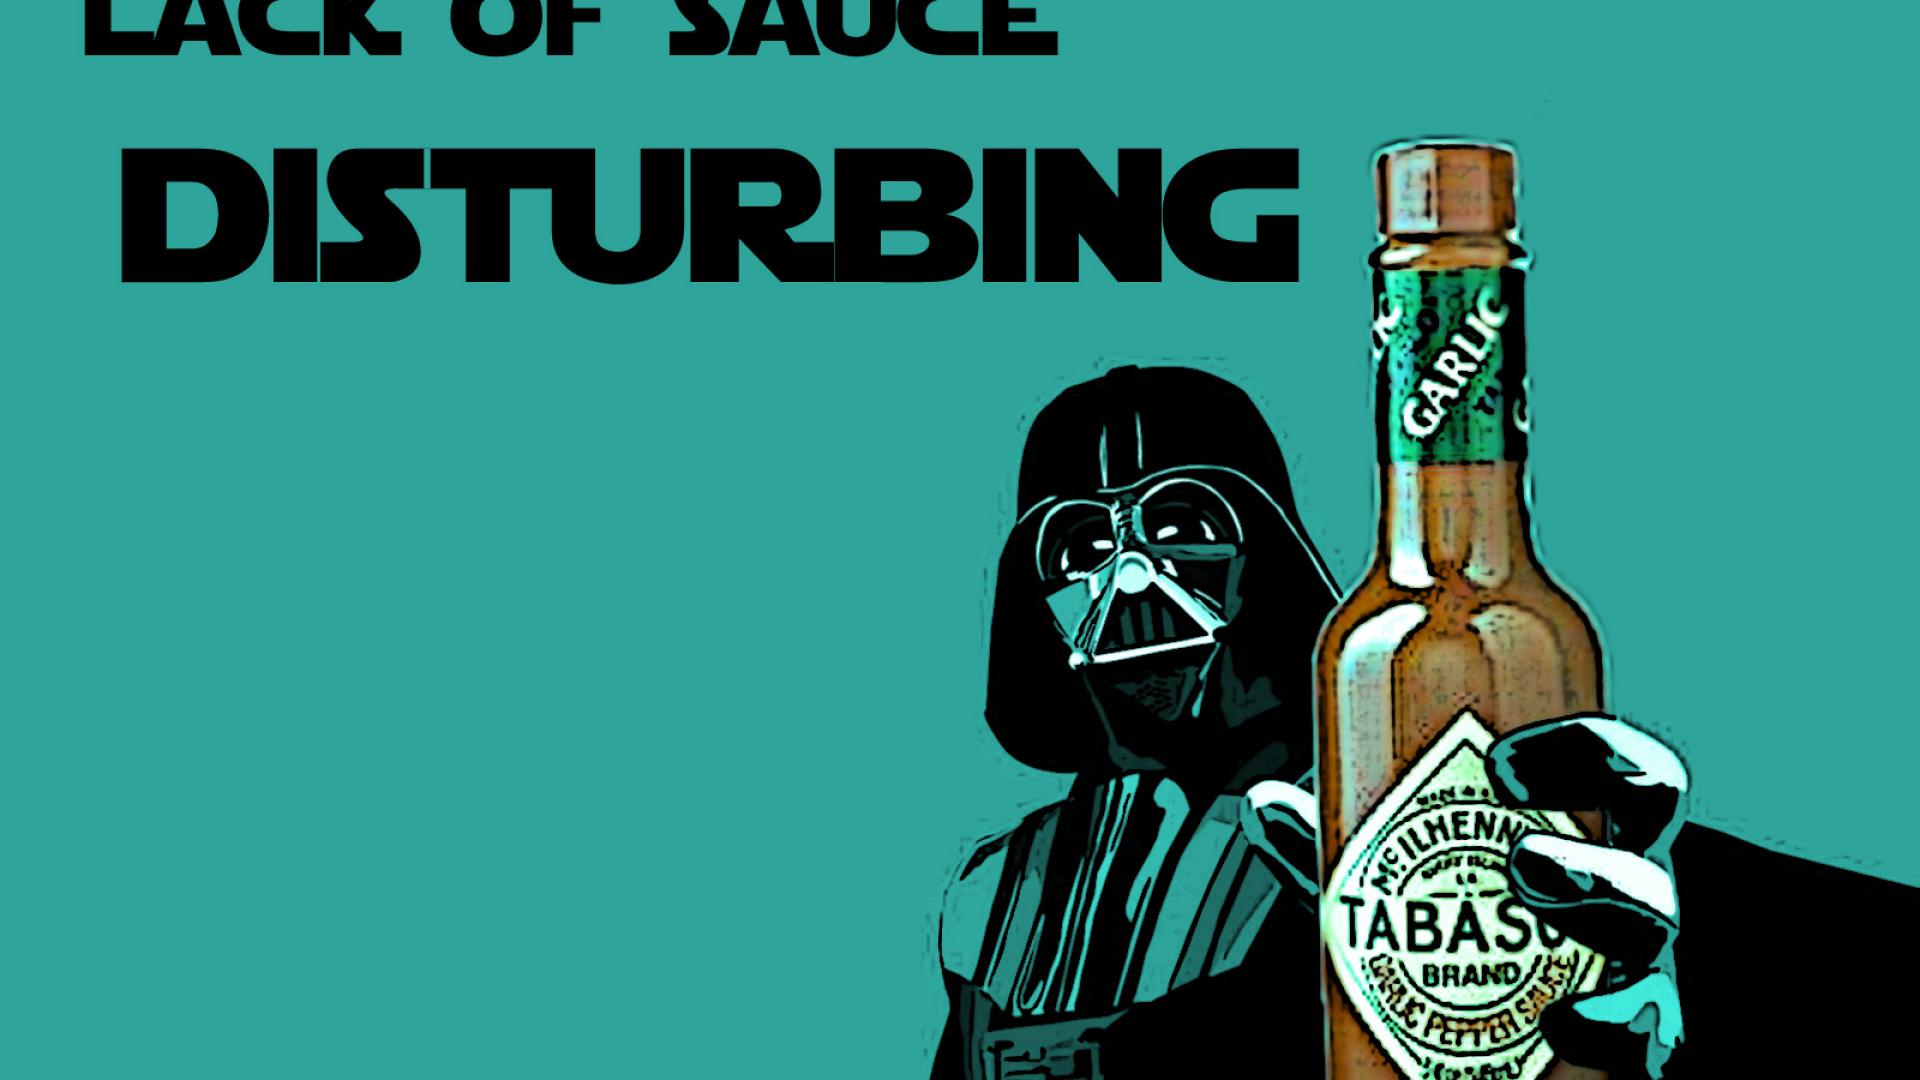 Star wars tabasco sauce blue background fan art wallpaper ...